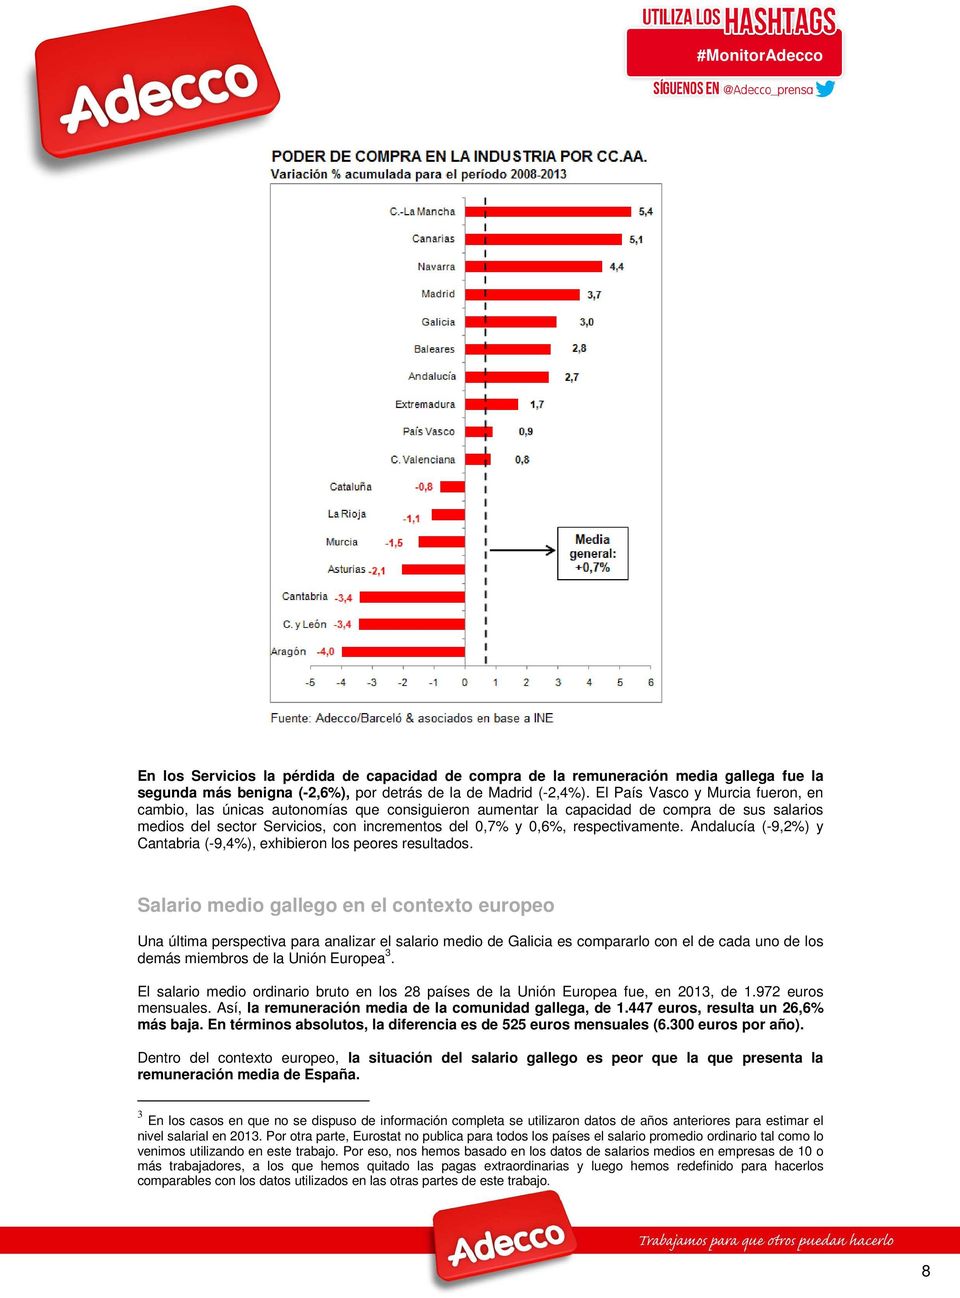 respectivamente. Andalucía (-9,2%) y Cantabria (-9,4%), exhibieron los peores resultados.